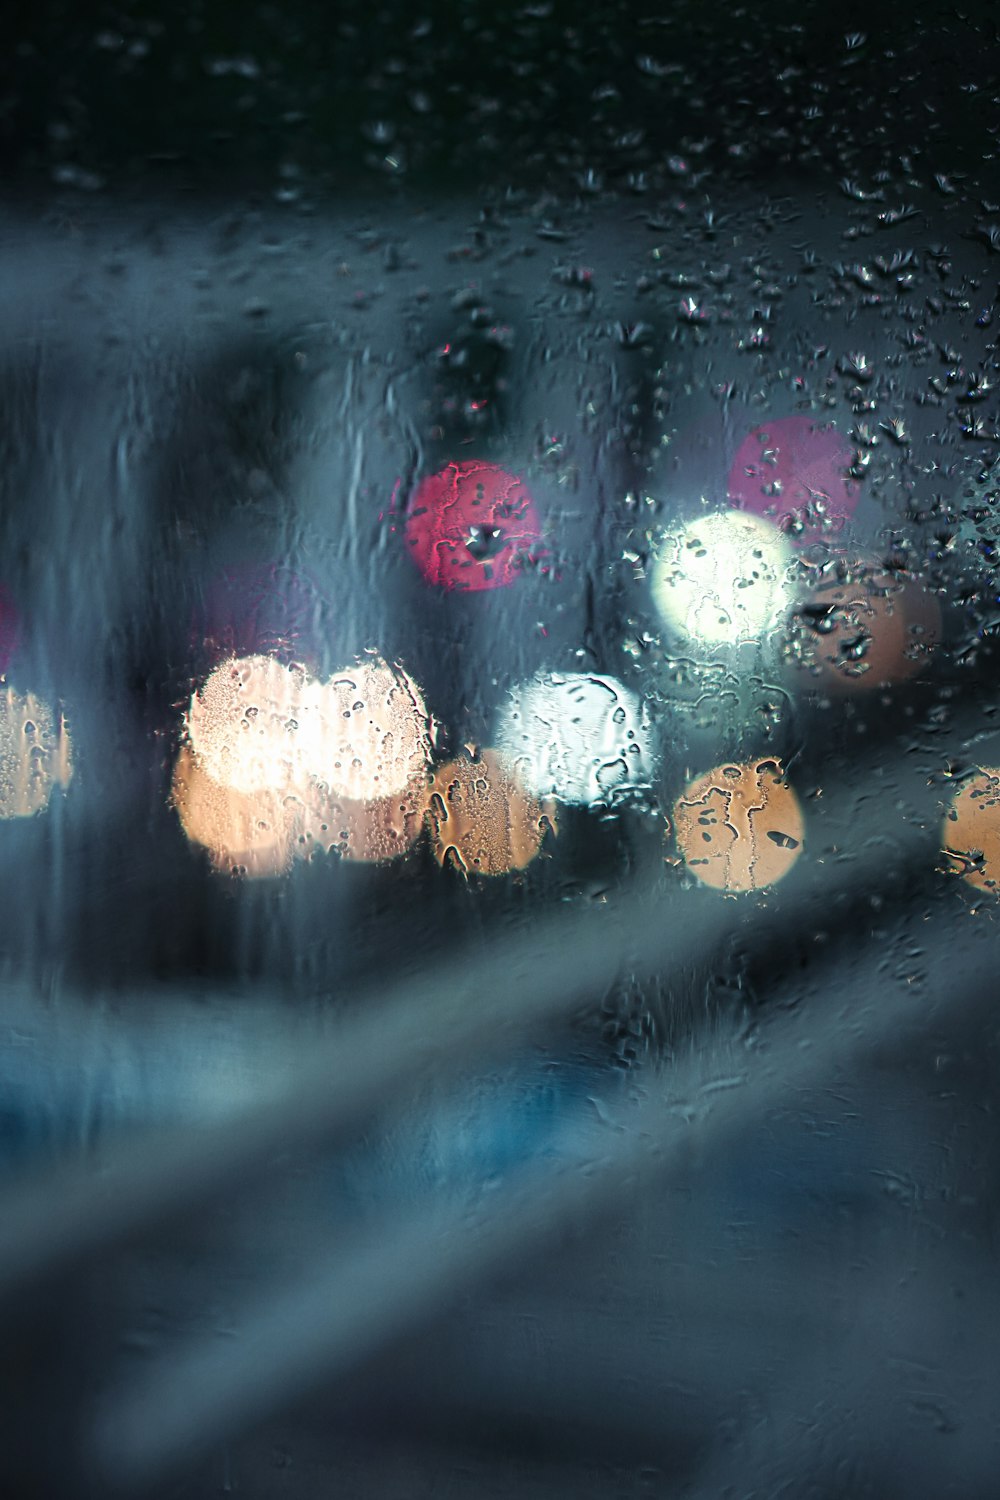 Una vista di una strada della città attraverso una finestra coperta dalla pioggia